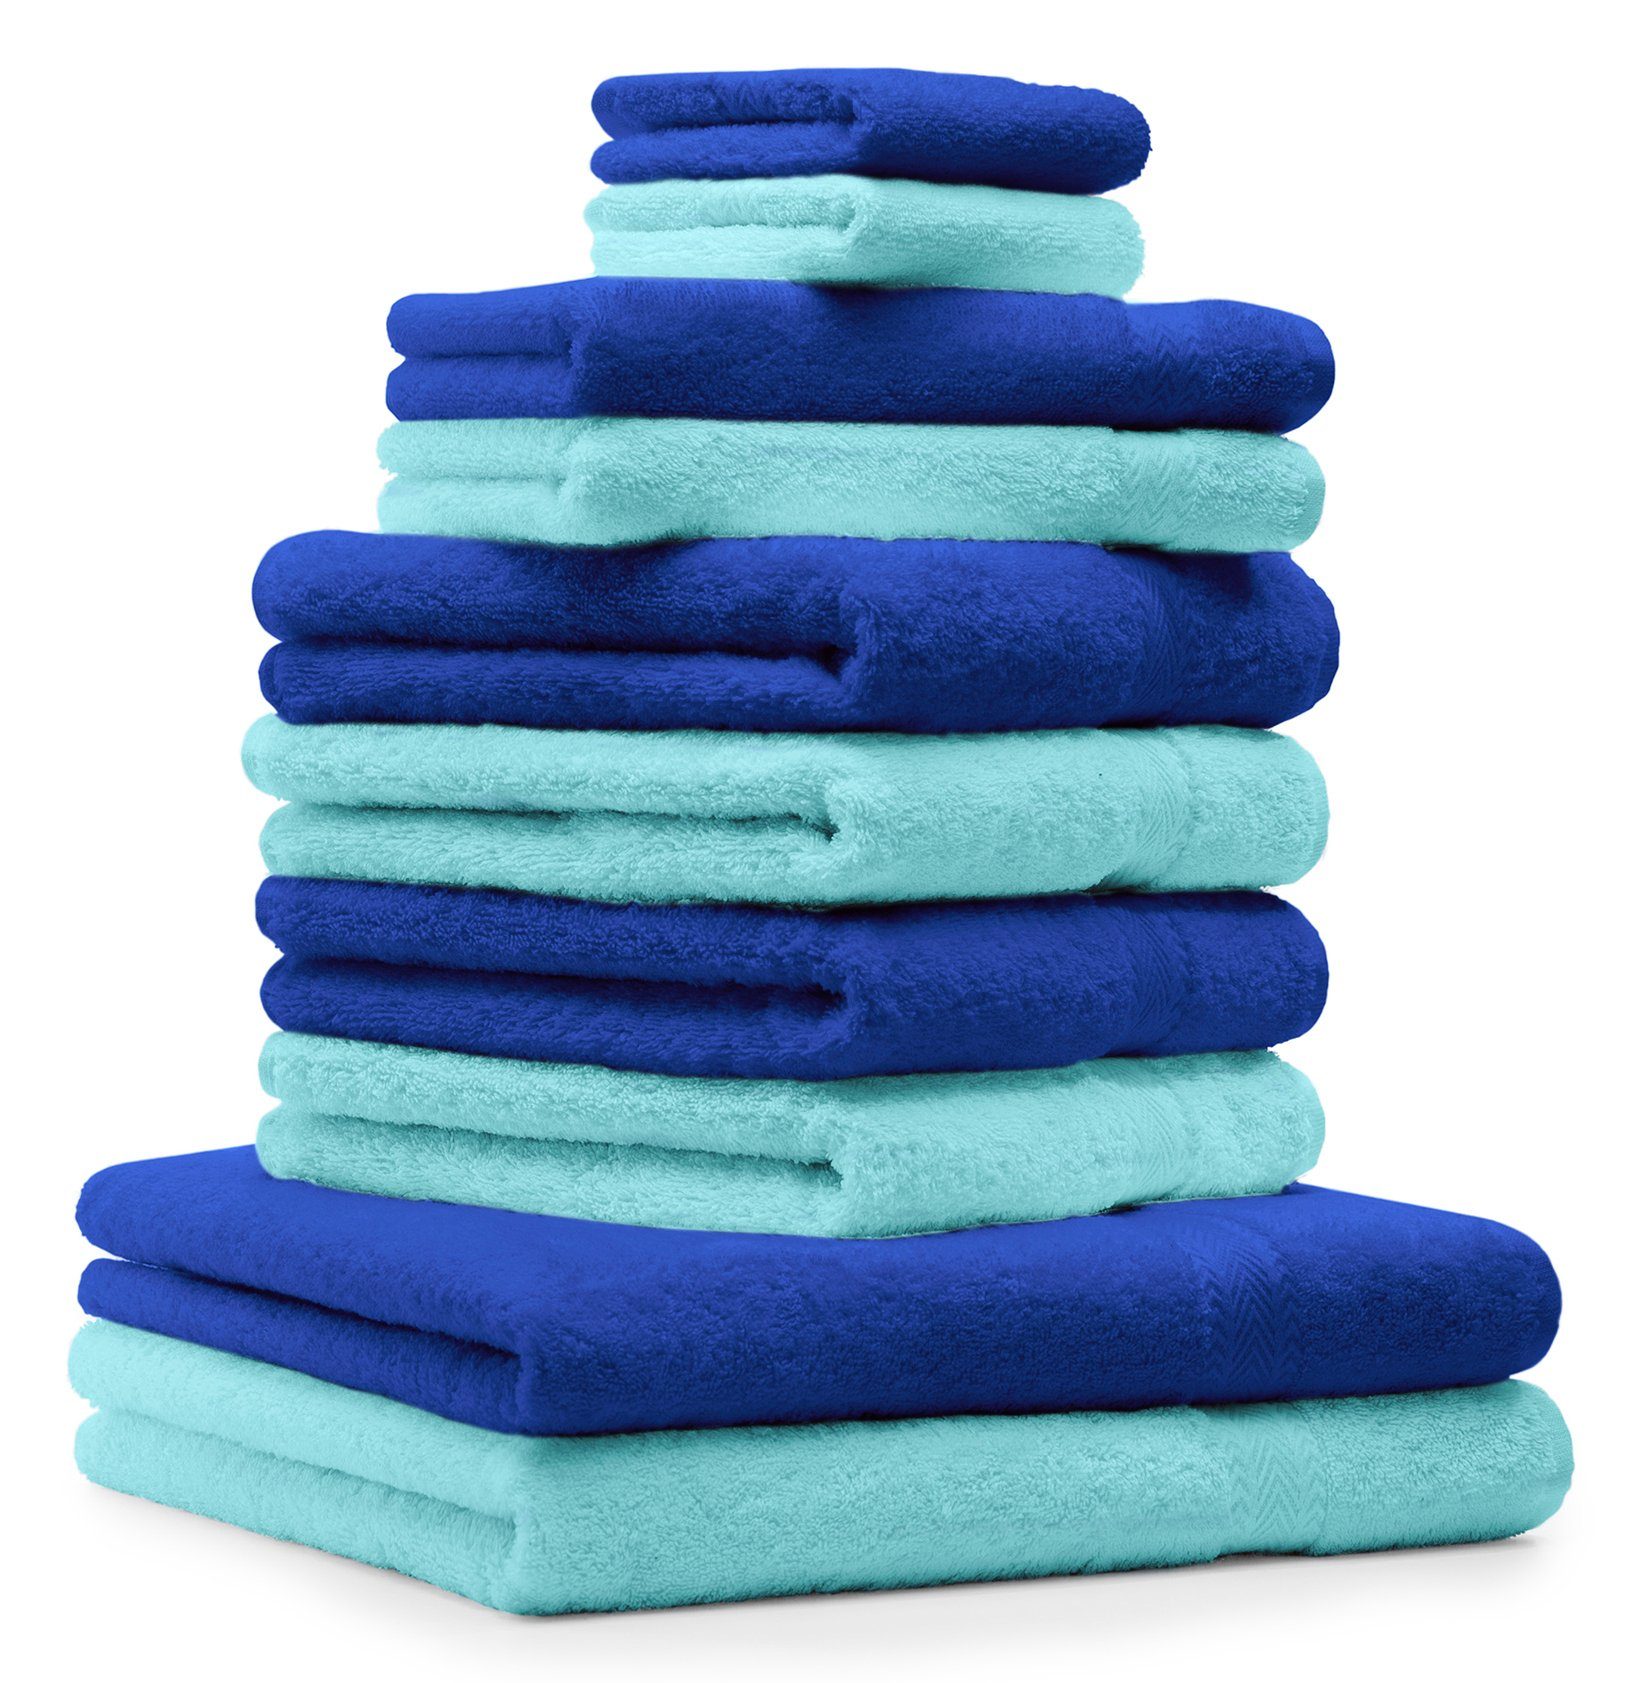 CLASSIC royalblau 100% 100% Baumwolle Handtuch Betz und Set 10-TLG. Fb. türkis, Baumwolle Handtuch-Set